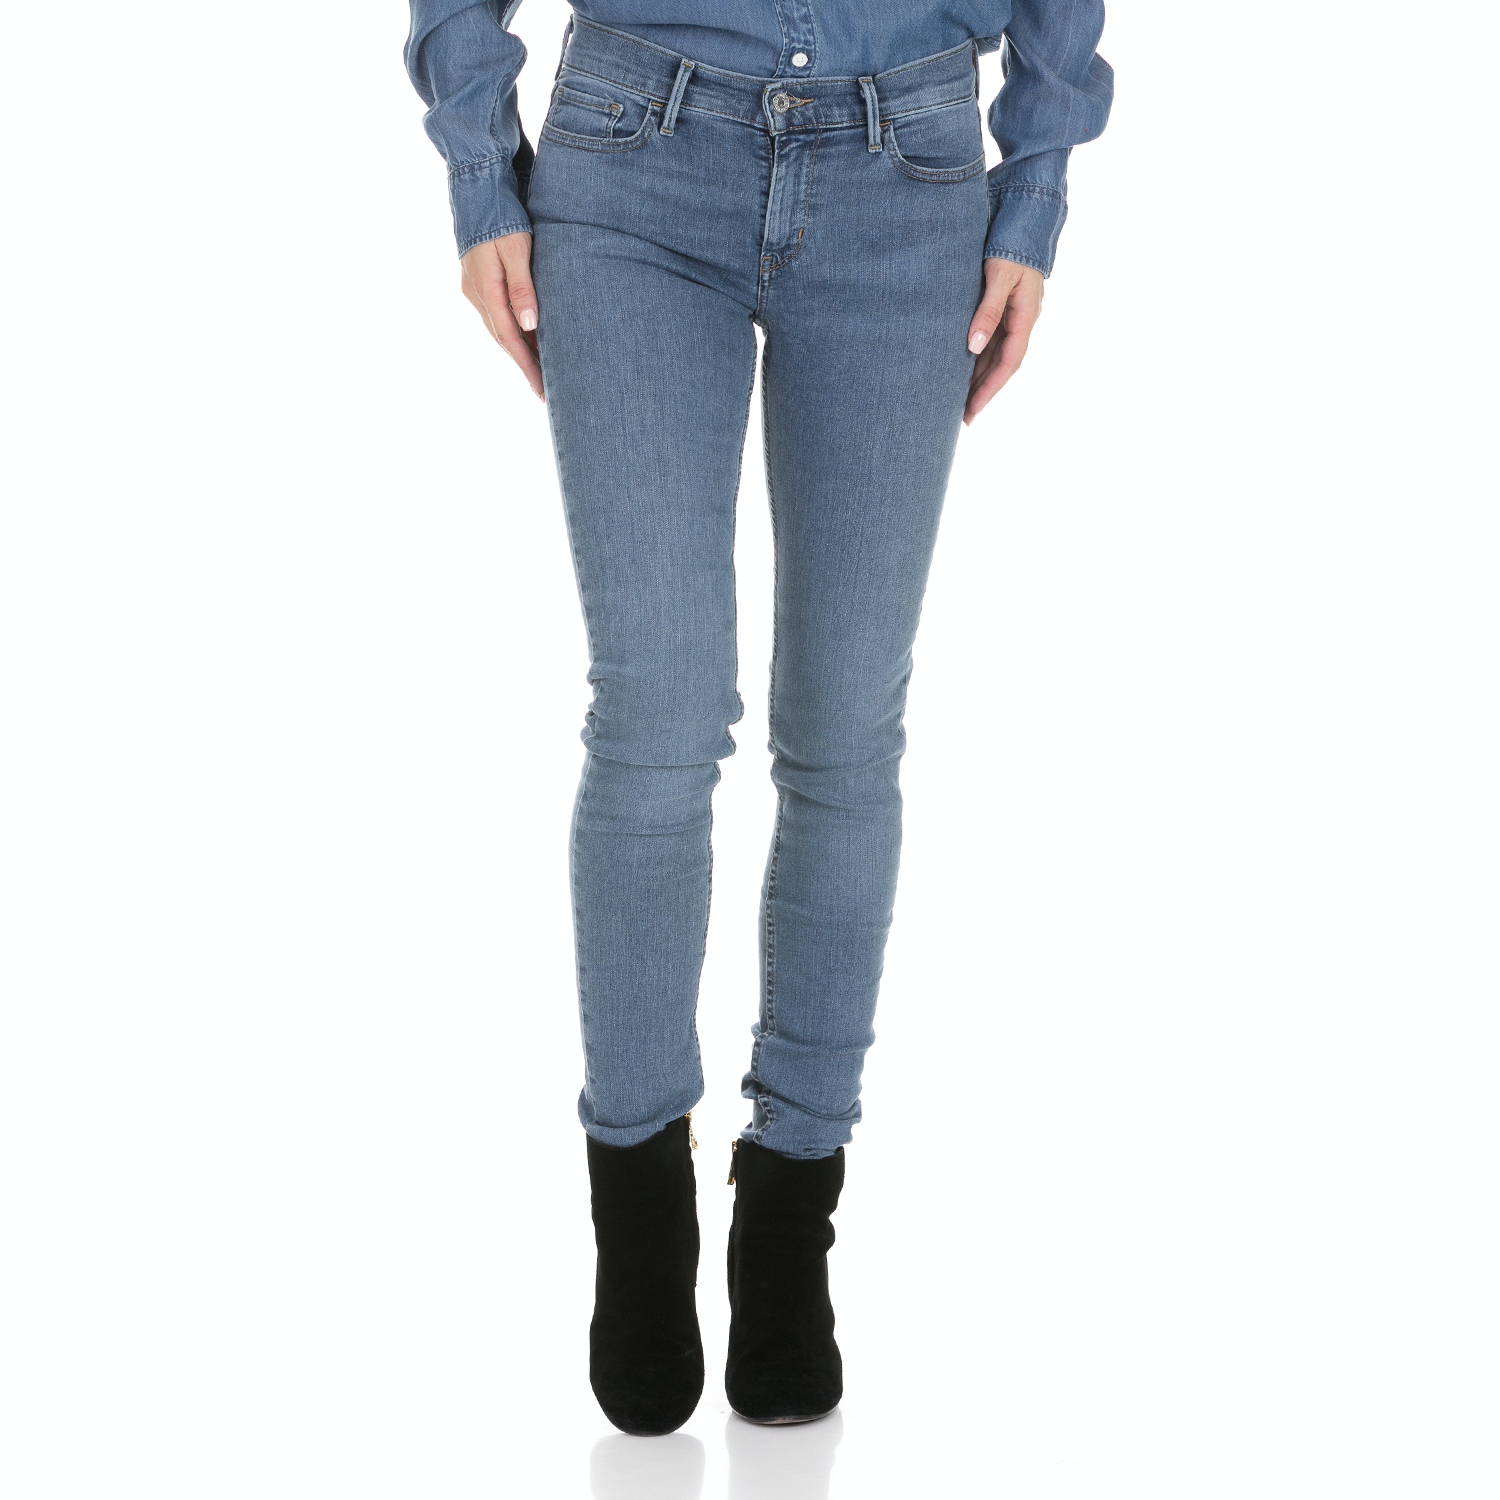 Γυναικεία/Ρούχα/Τζίν/Skinny LEVI'S - Γυναικείο jean παντελόνι LEVI'S INNOVATION SUPER SKINNY CHELSEA μπλε